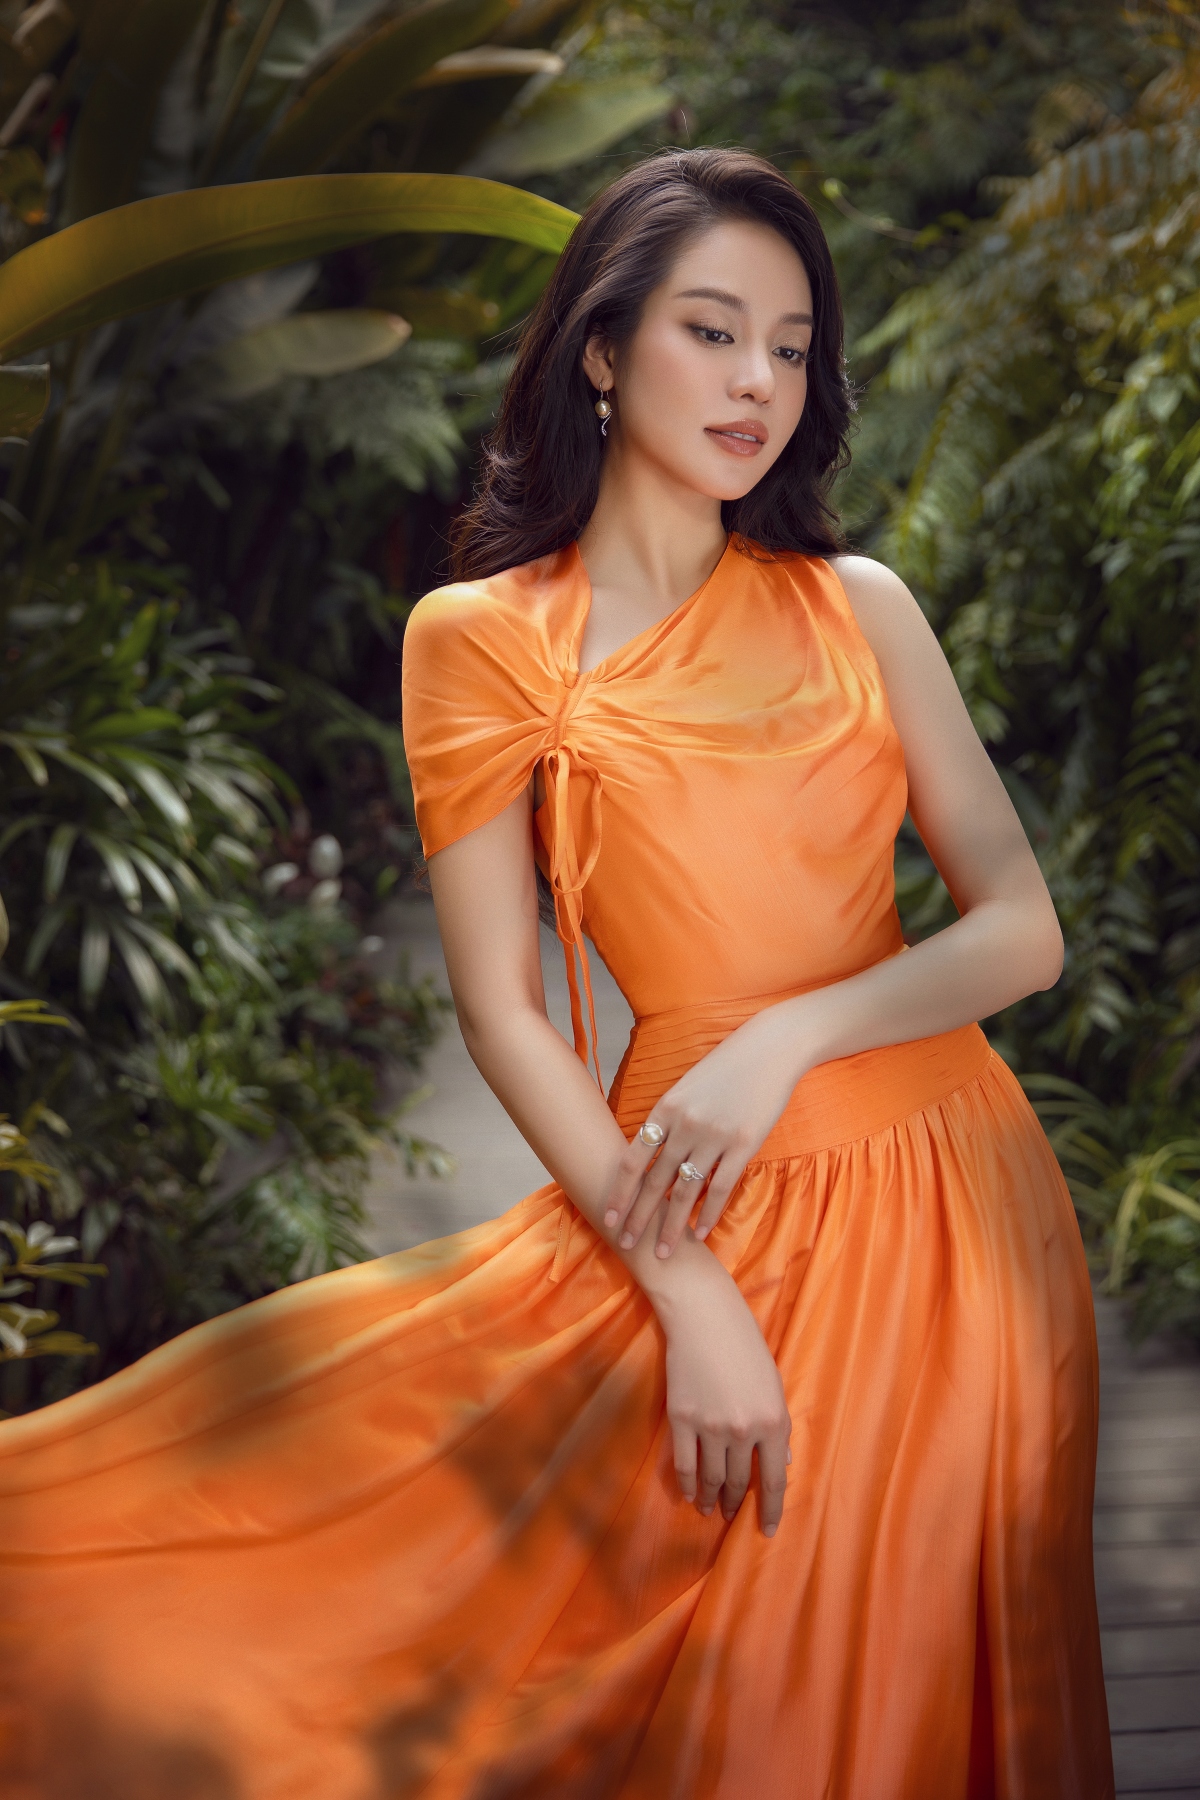 Hoa hậu Thanh Thủy đẹp gợi cảm trong bộ ảnh mới - Ảnh 7.